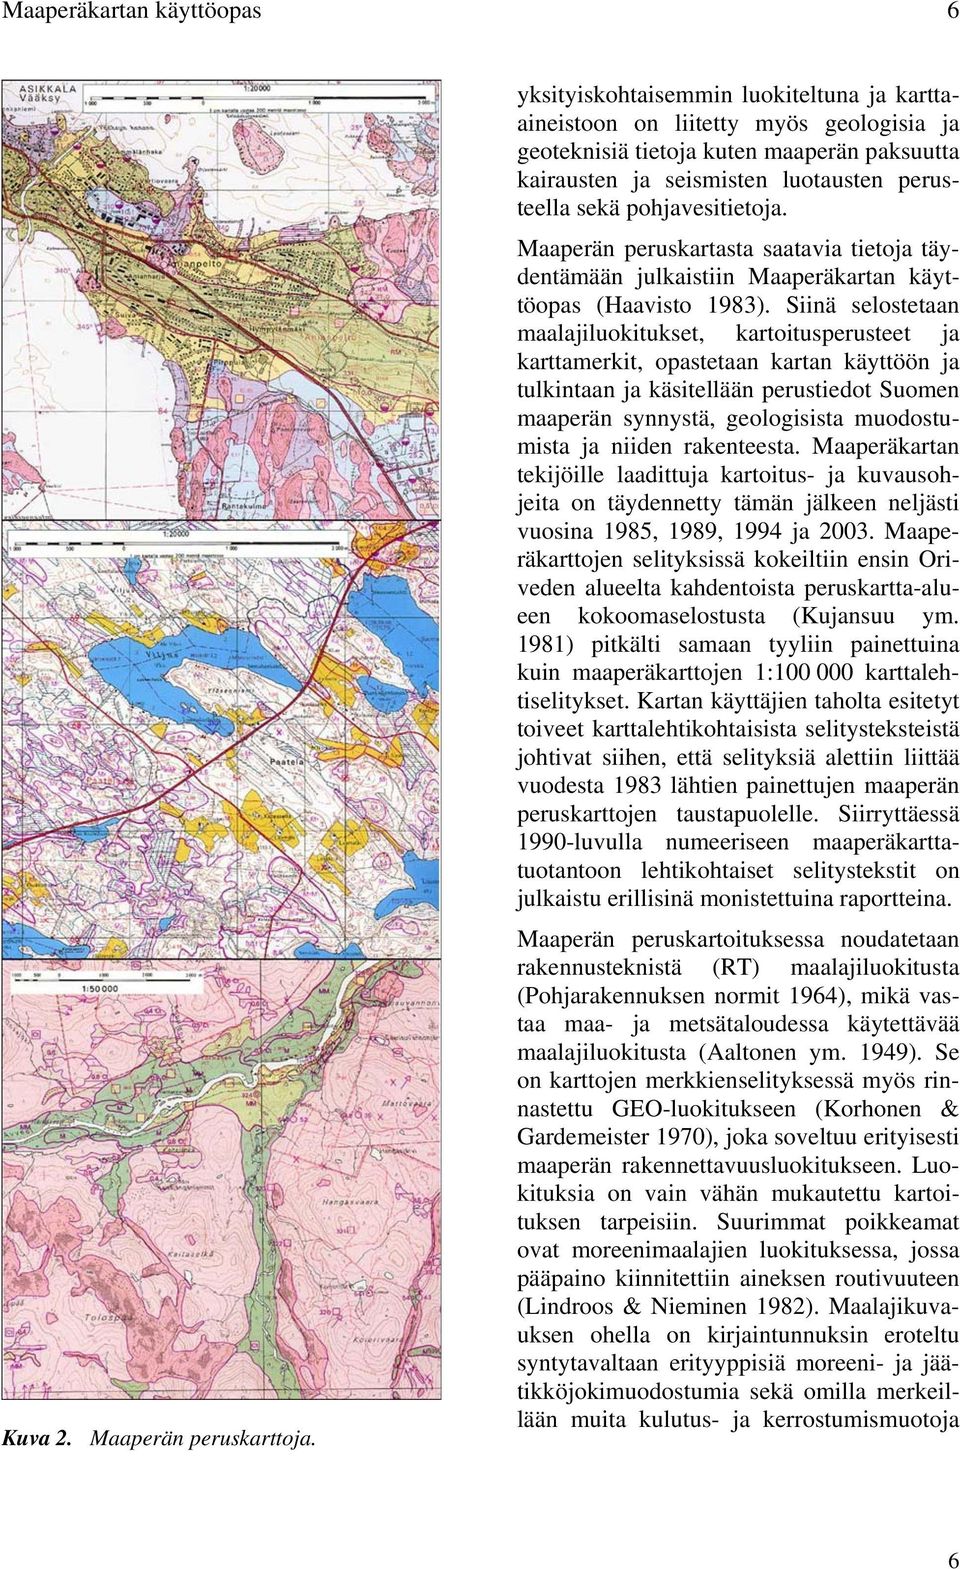 Maaperän peruskartasta saatavia tietoja täydentämään julkaistiin Maaperäkartan käyttöopas (Haavisto 1983).